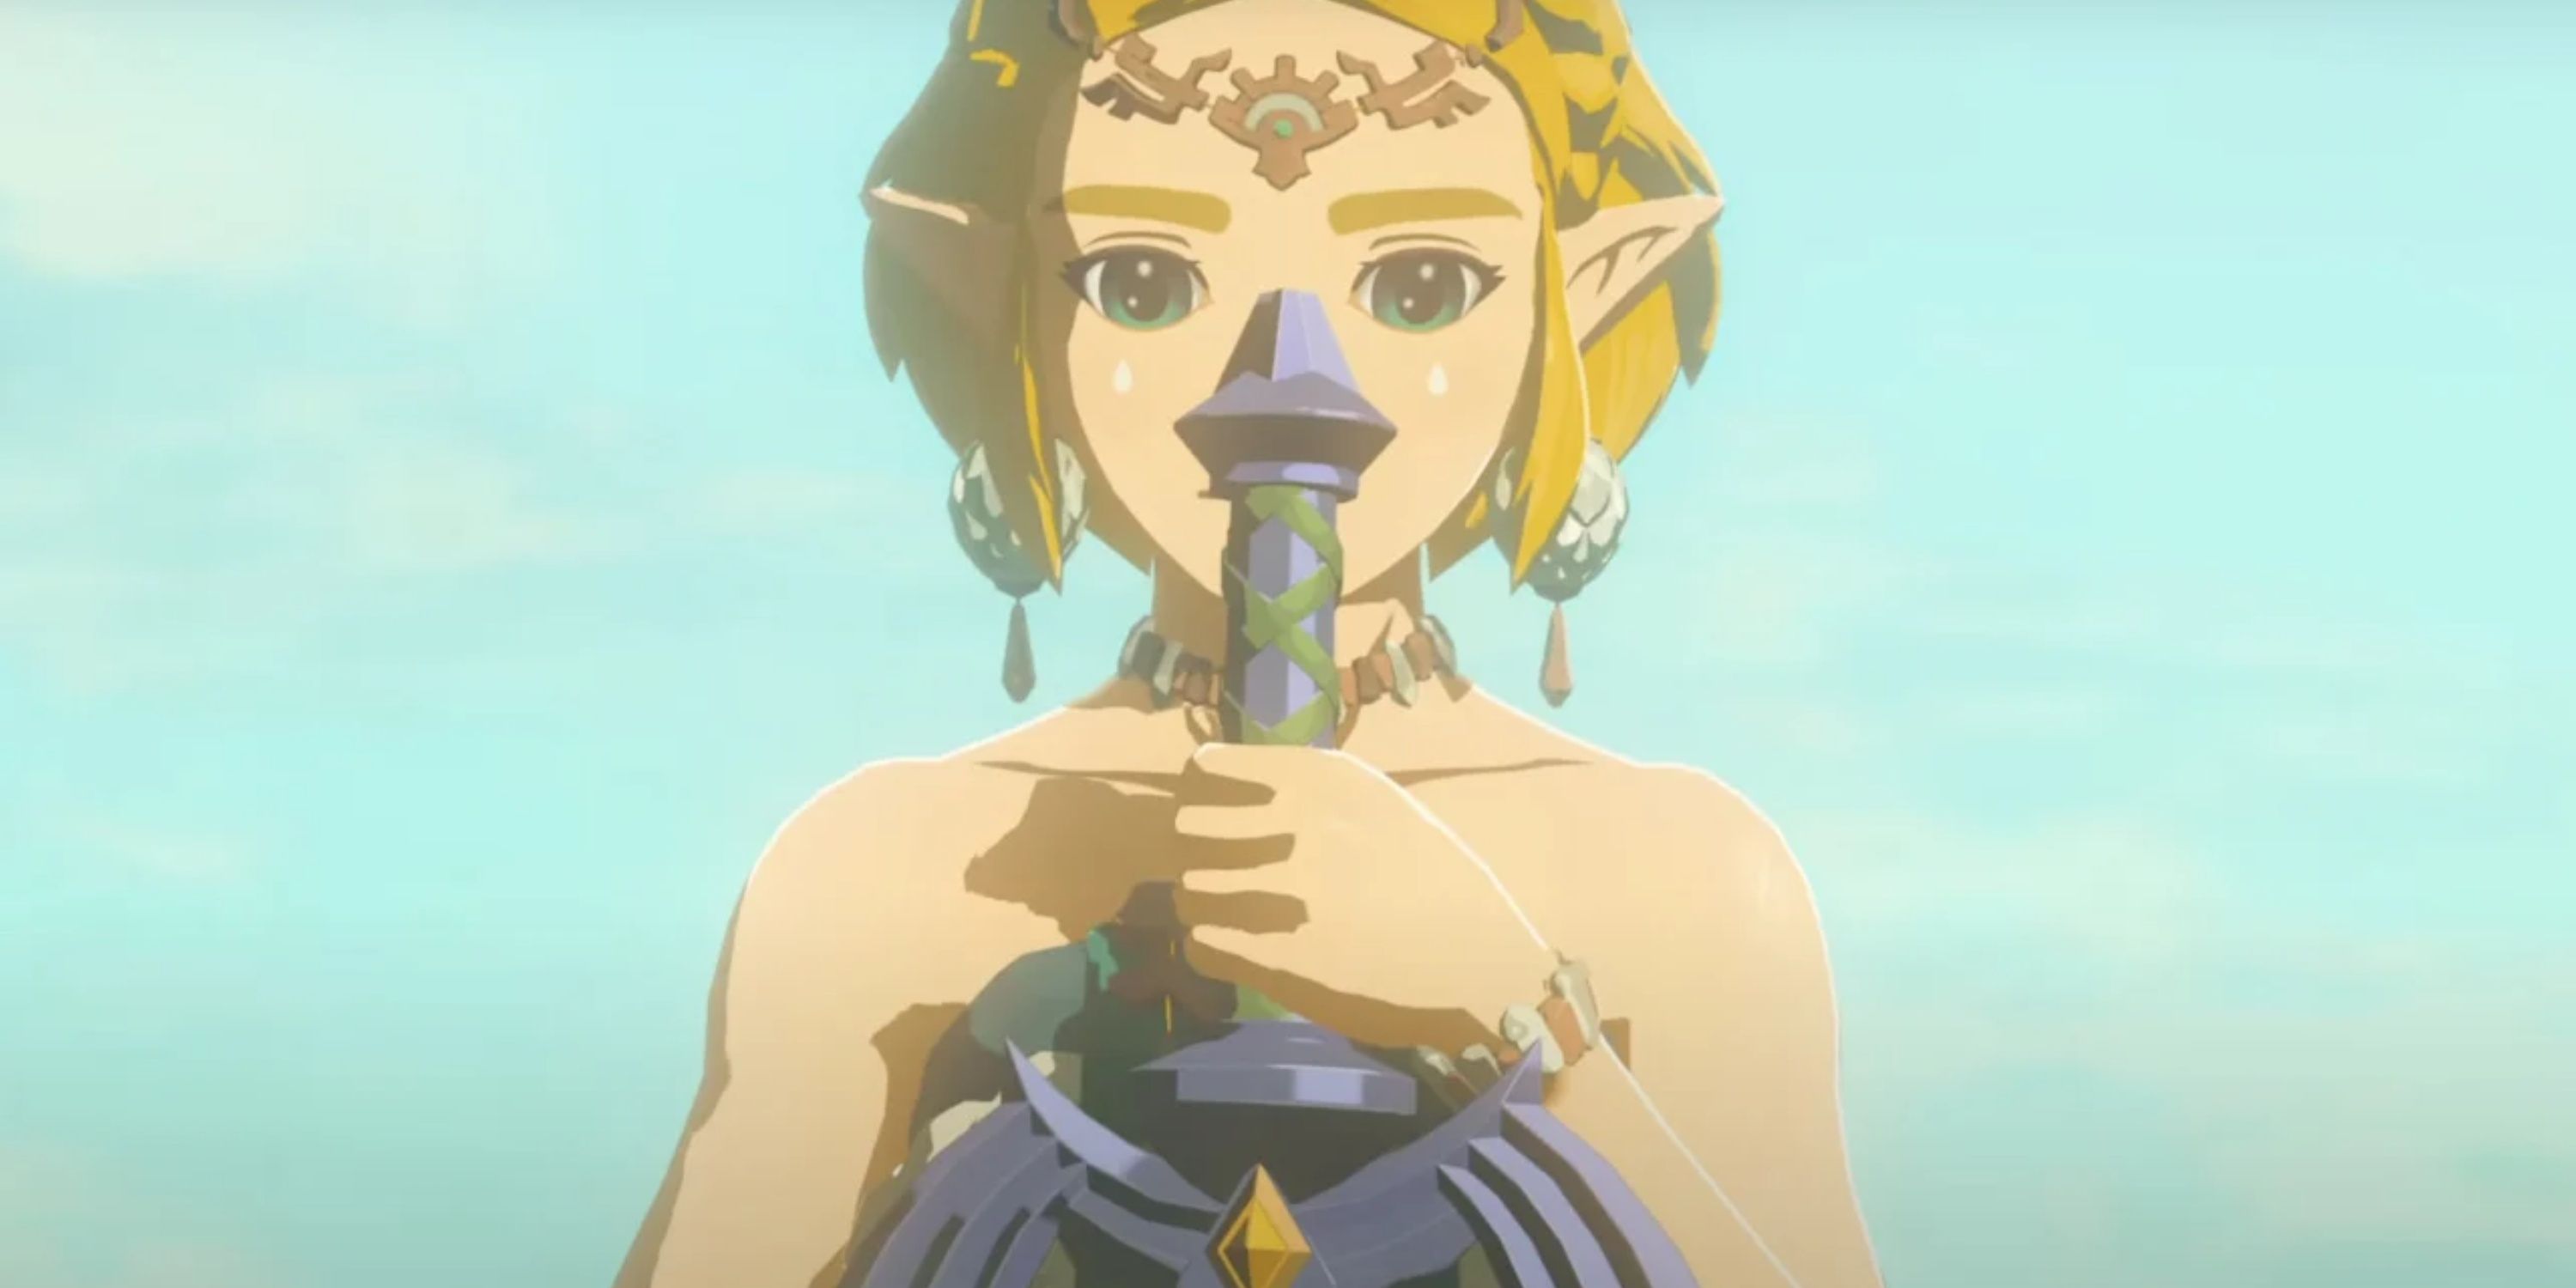 Princess Zelda in TOTK